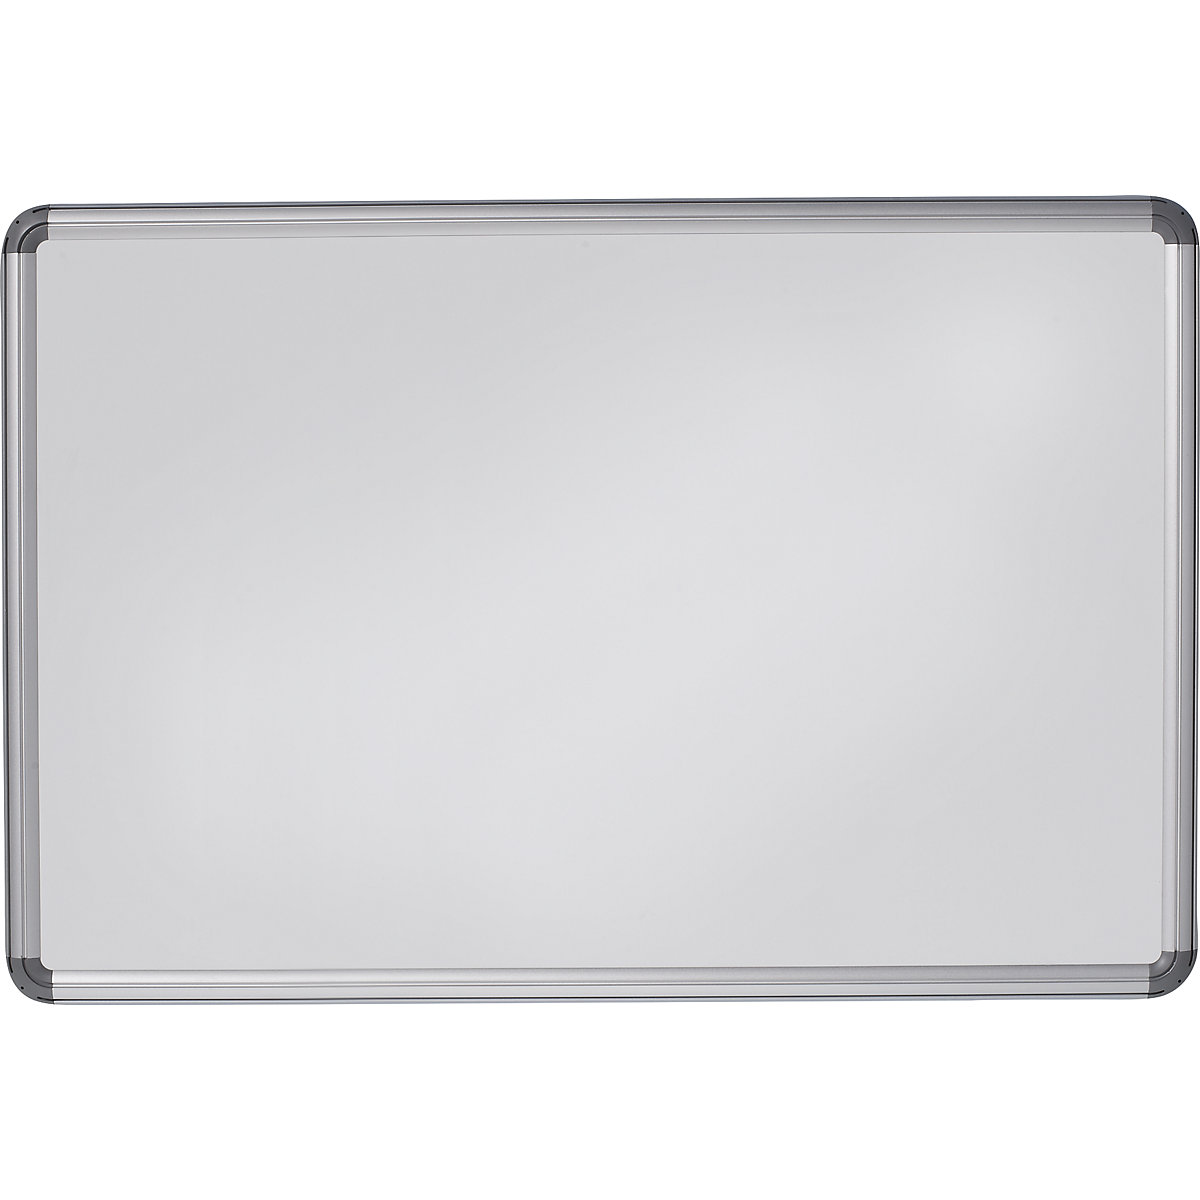 Designerska tablica ścienna – eurokraft pro, blacha stalowa, lakierowana, szer. x wys. 1500 x 1000 mm, biały-14